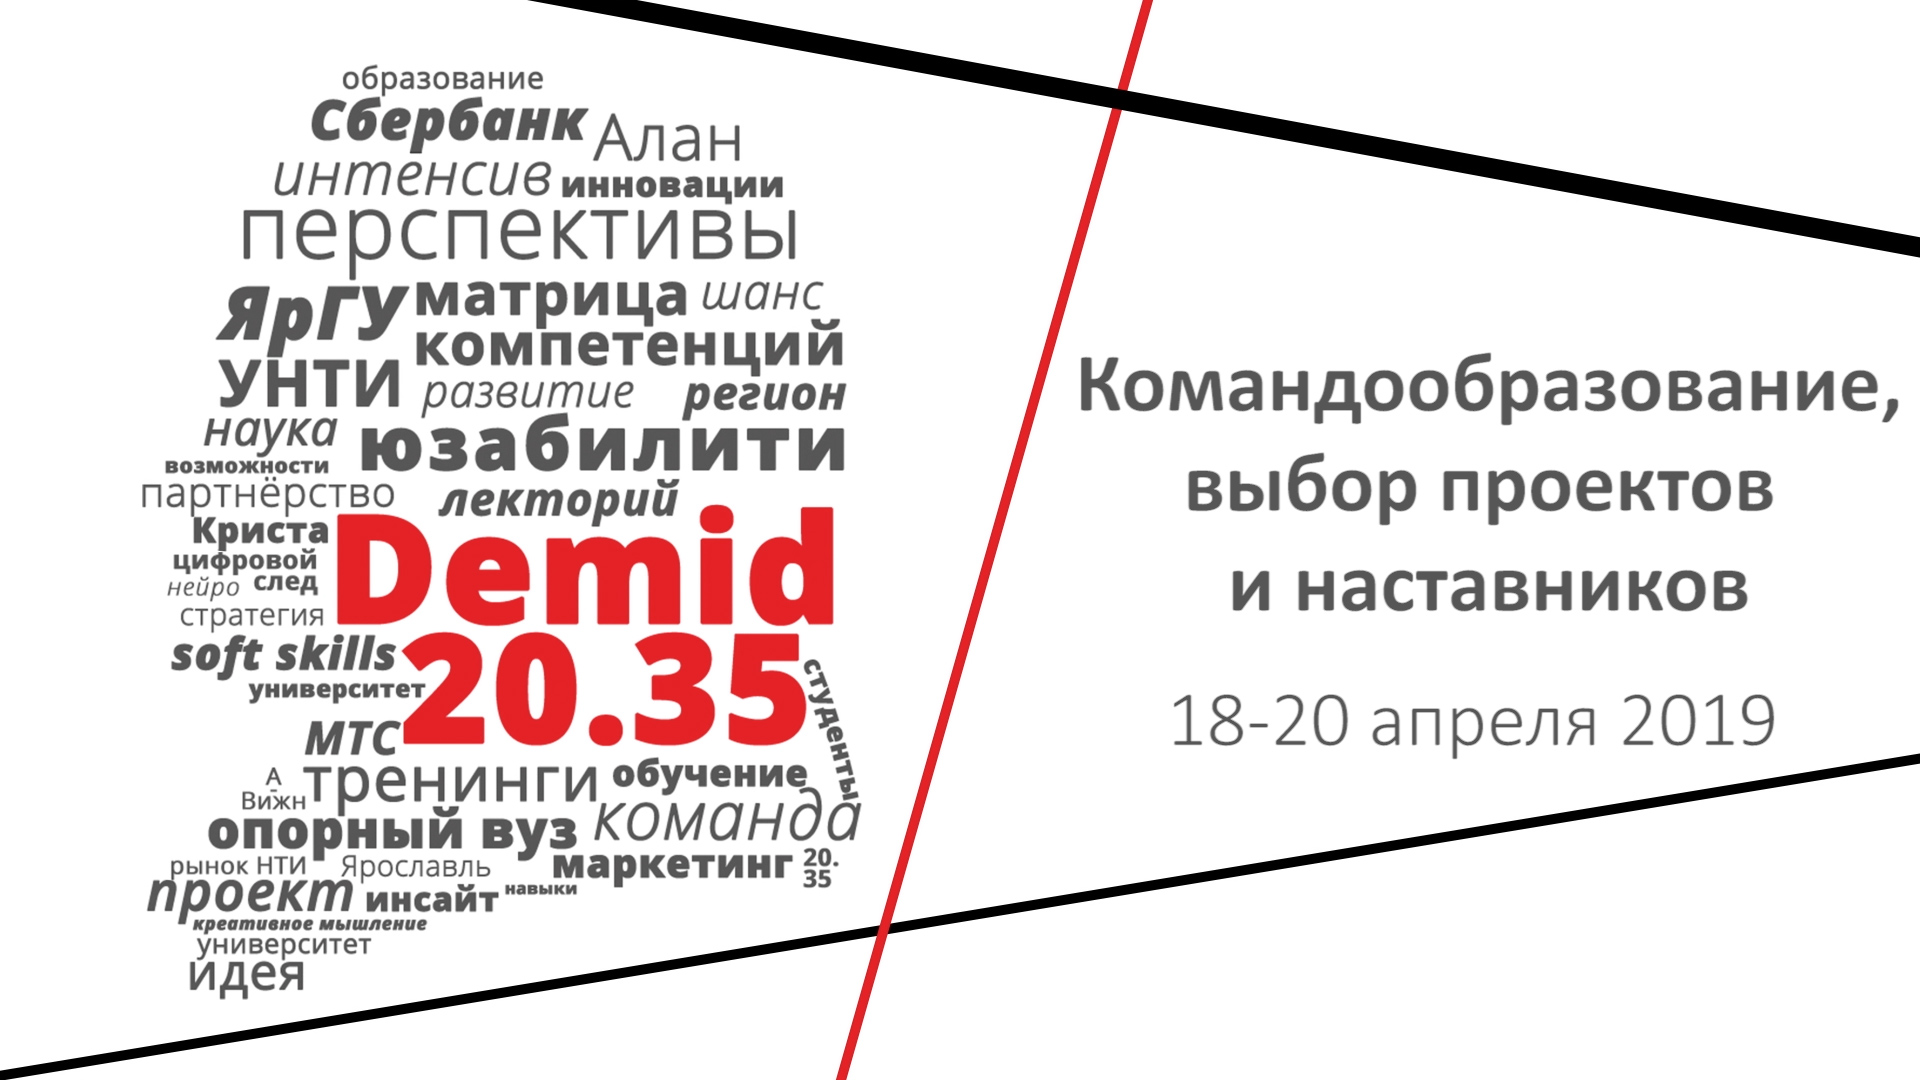 #Demid2035: командообразование, выбор проектов и наставников